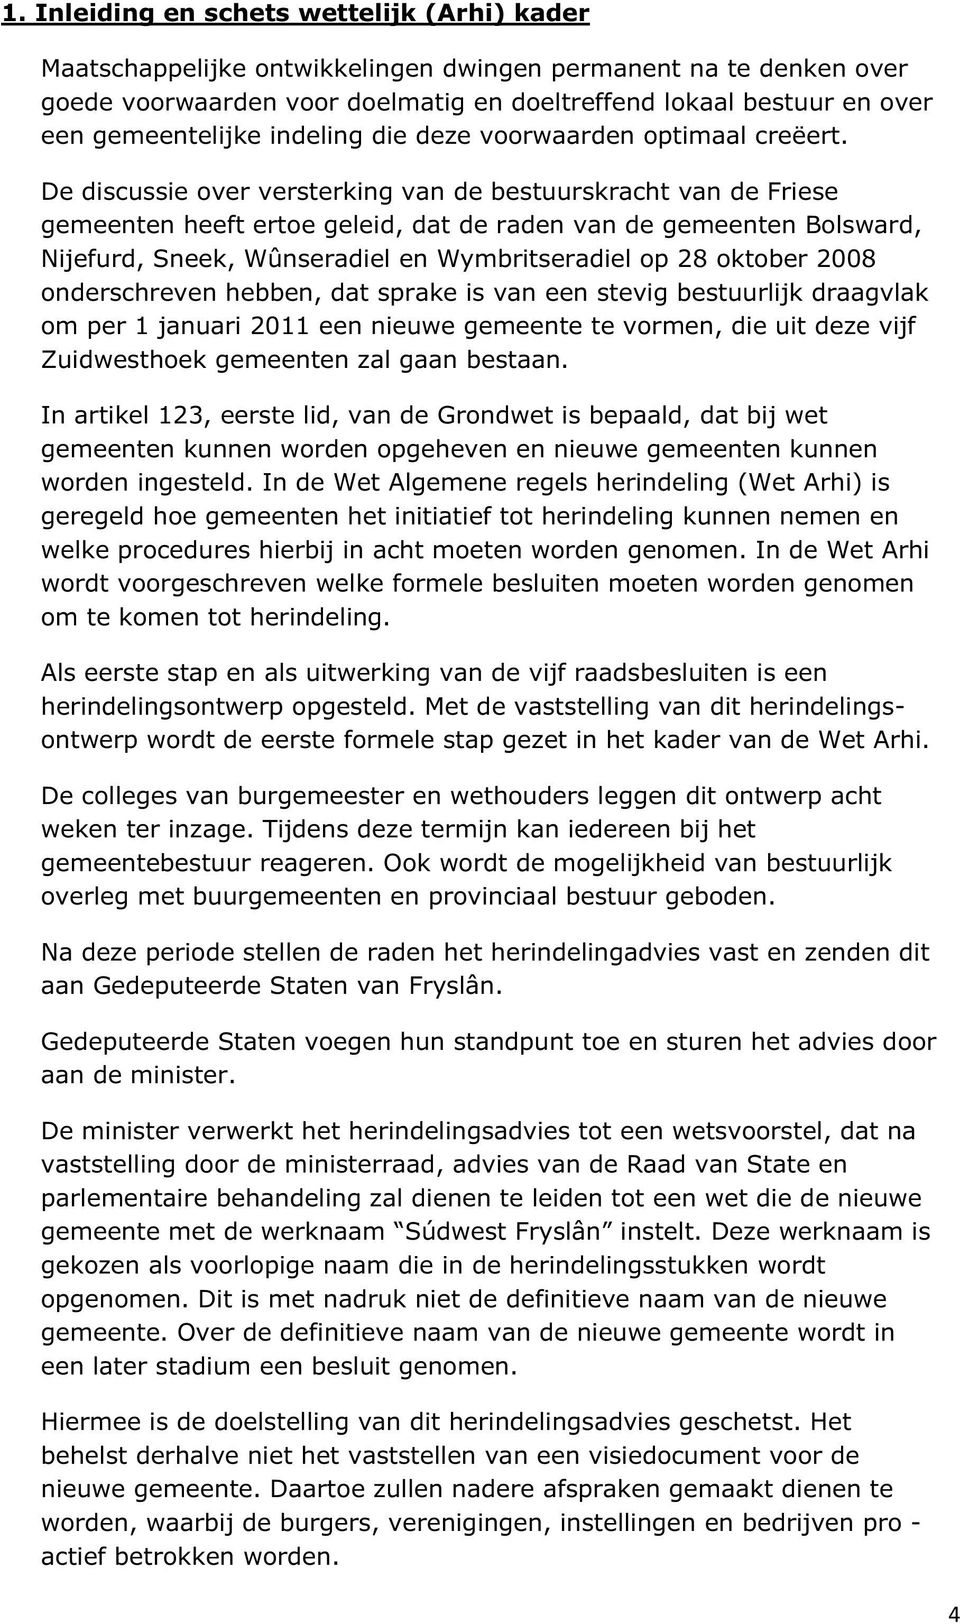 De discussie over versterking van de bestuurskracht van de Friese gemeenten heeft ertoe geleid, dat de raden van de gemeenten Bolsward, Nijefurd, Sneek, Wûnseradiel en Wymbritseradiel op 28 oktober